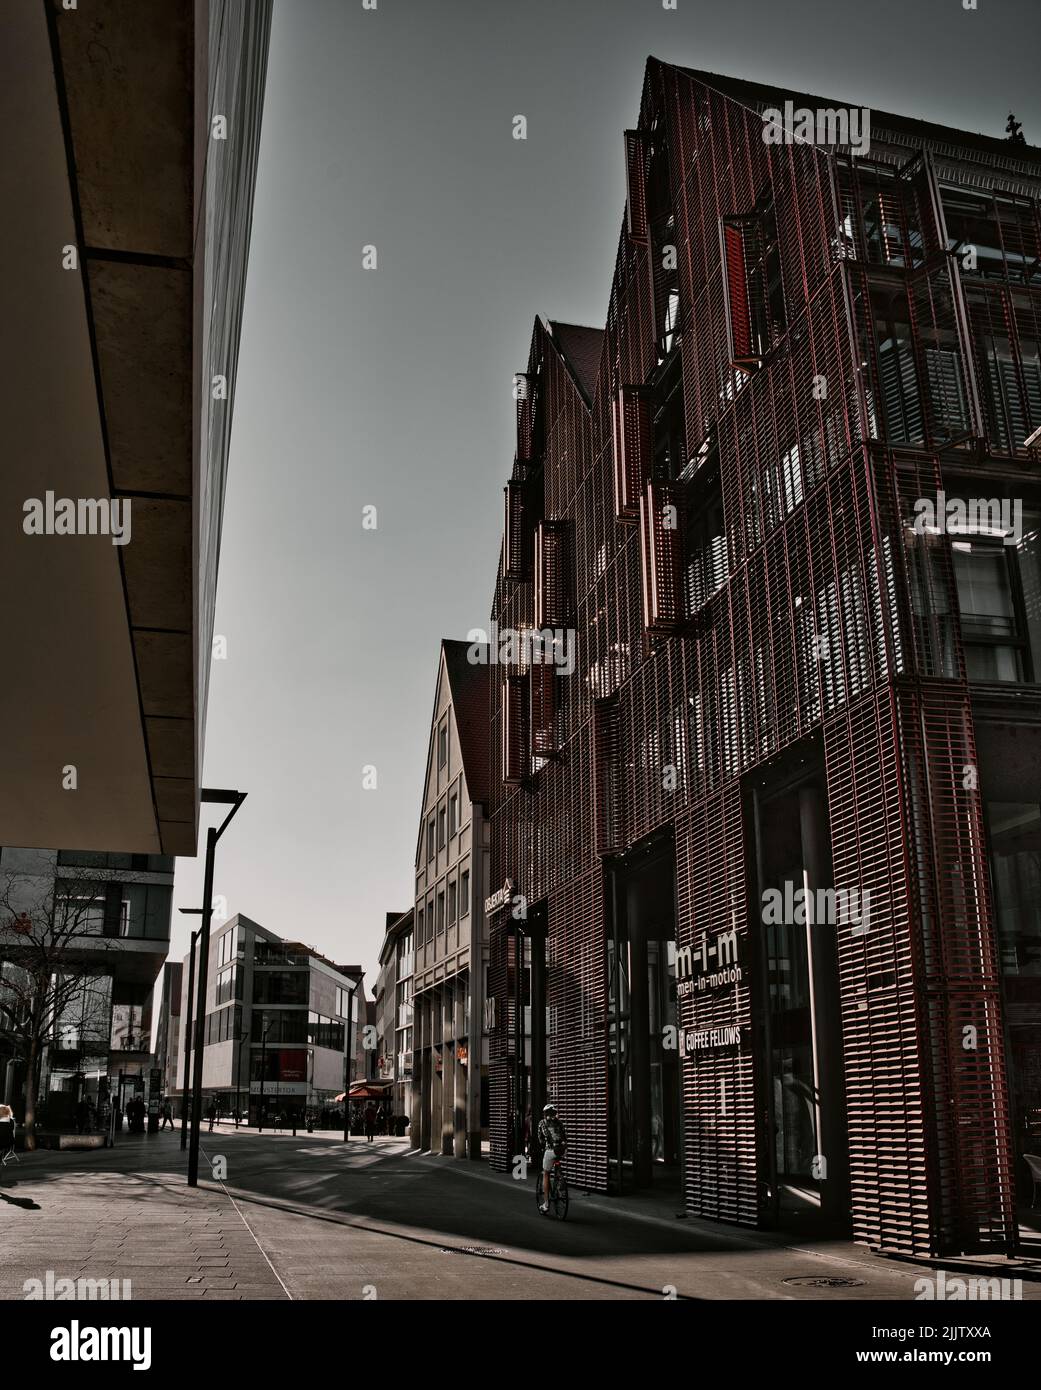 Imagen vertical de una zona urbana con edificios históricos en la ciudad de Ulm, Munster, Alemania Foto de stock